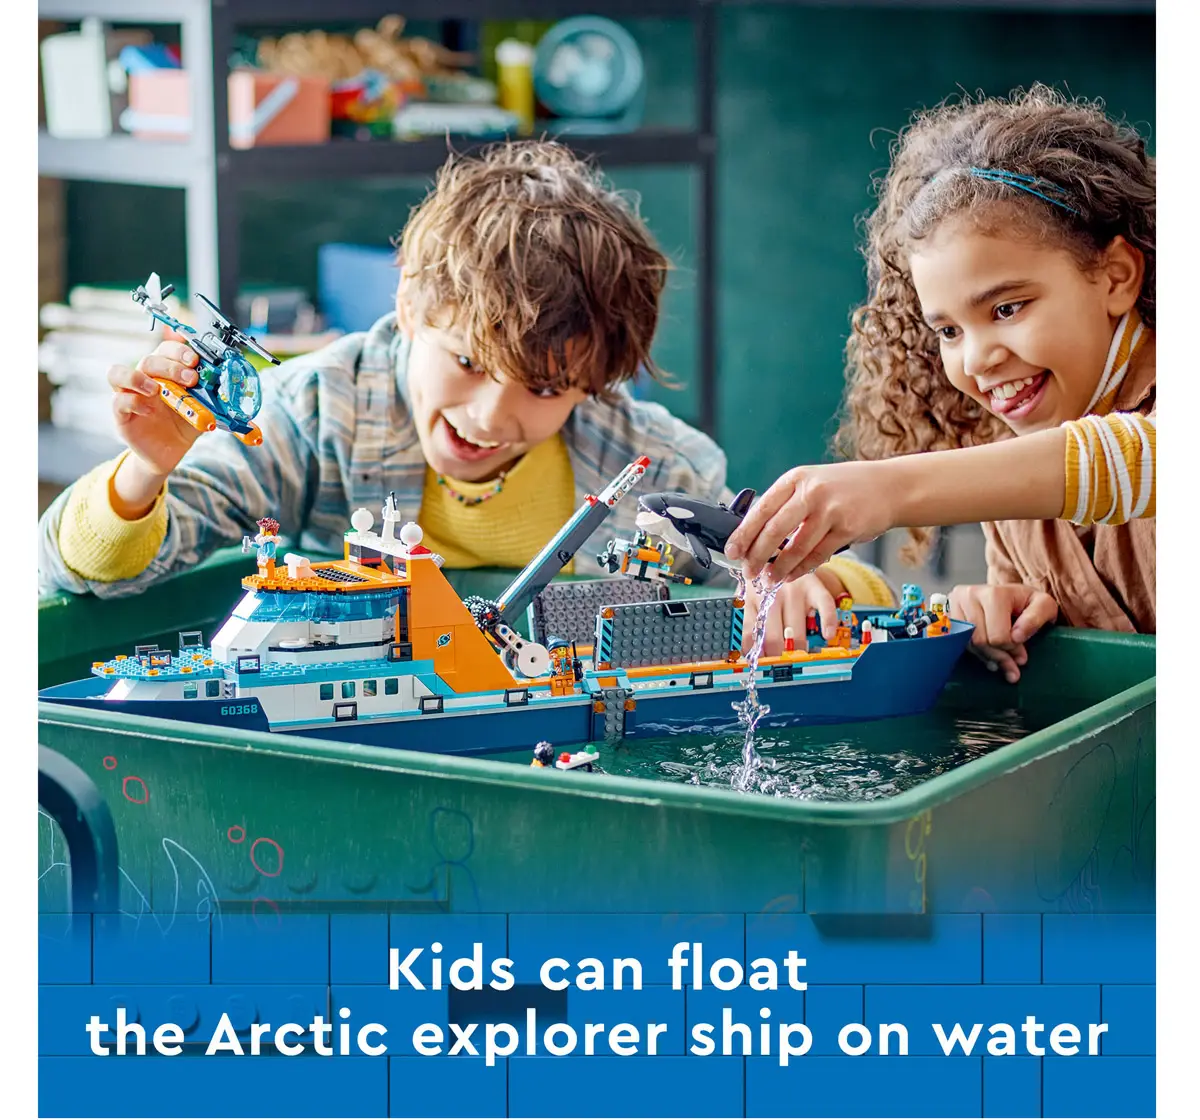 Lego City Arctic Explorer Ship 60368 Building Toy Set Multicolour For Kids Ages 7Y+ (815 Pieces)